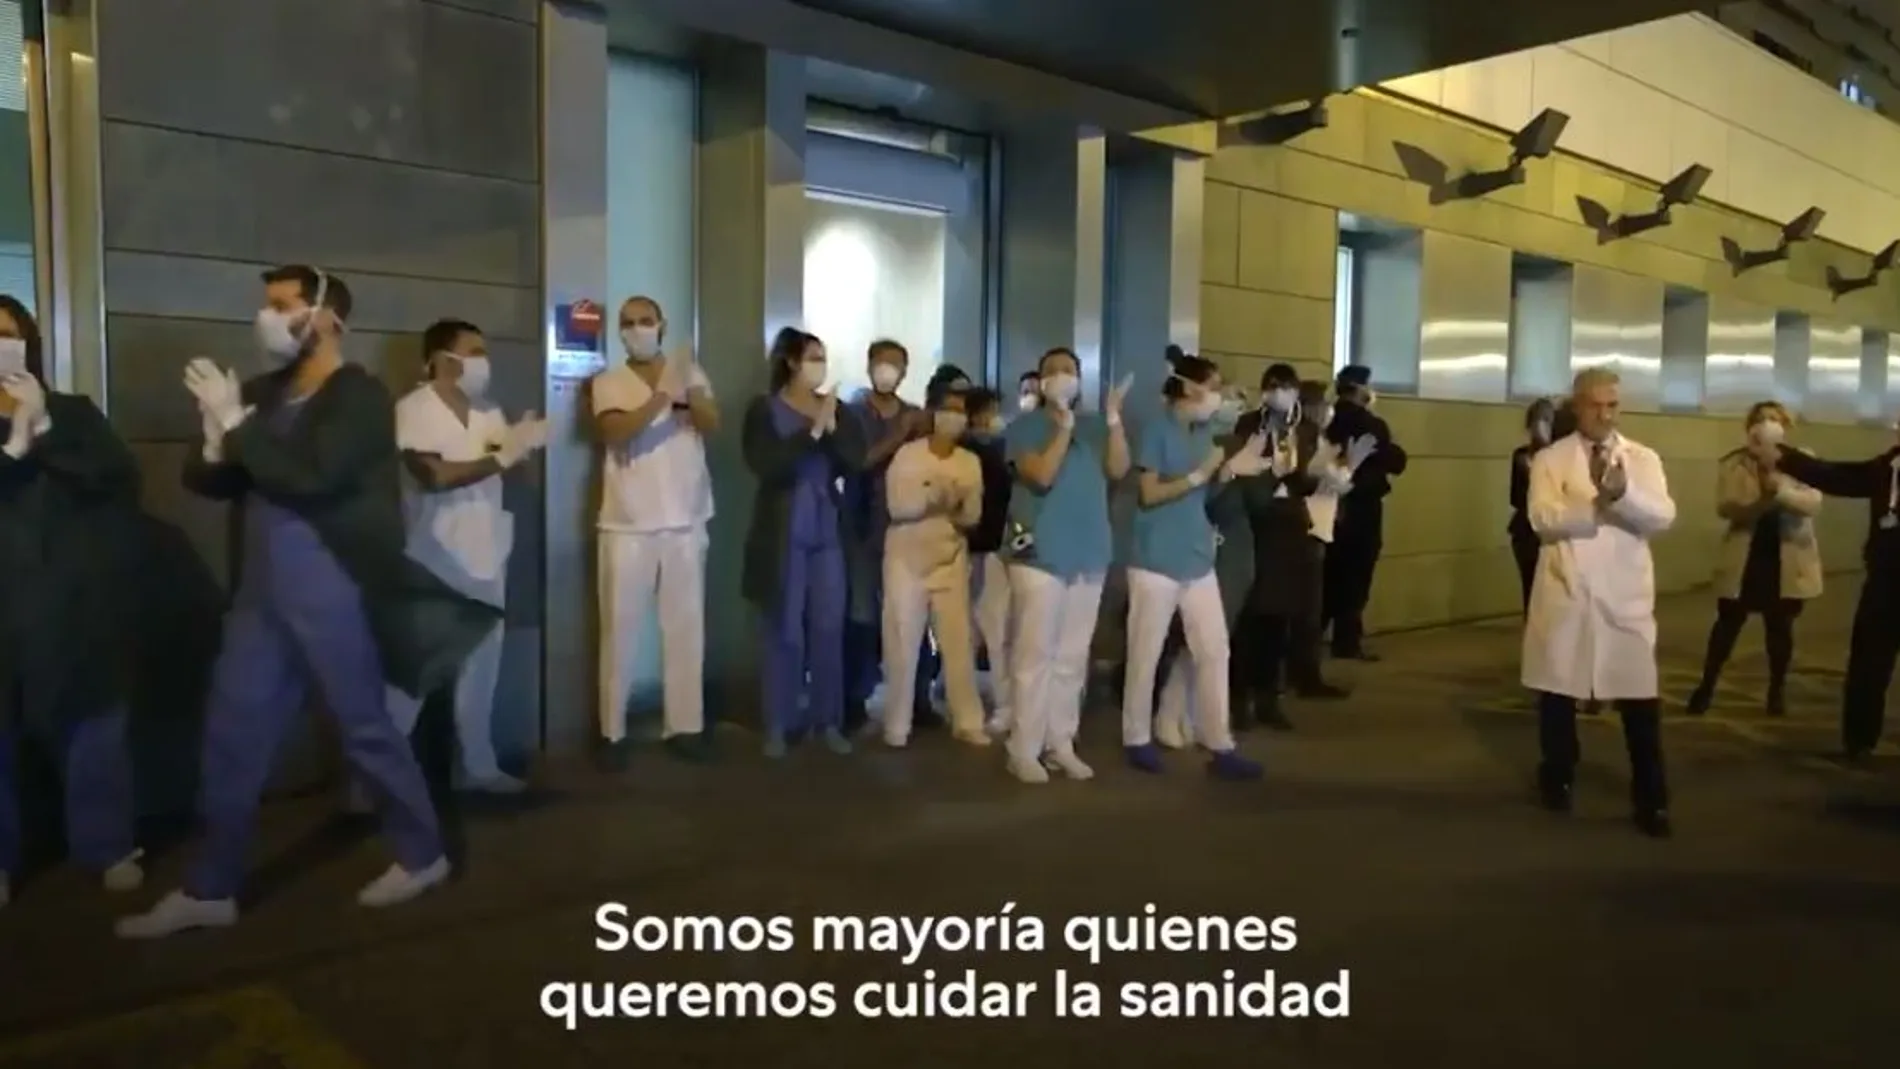 Vídeo de Podemos en el que se muestra el Hospital Infanta Luisa de Sevilla